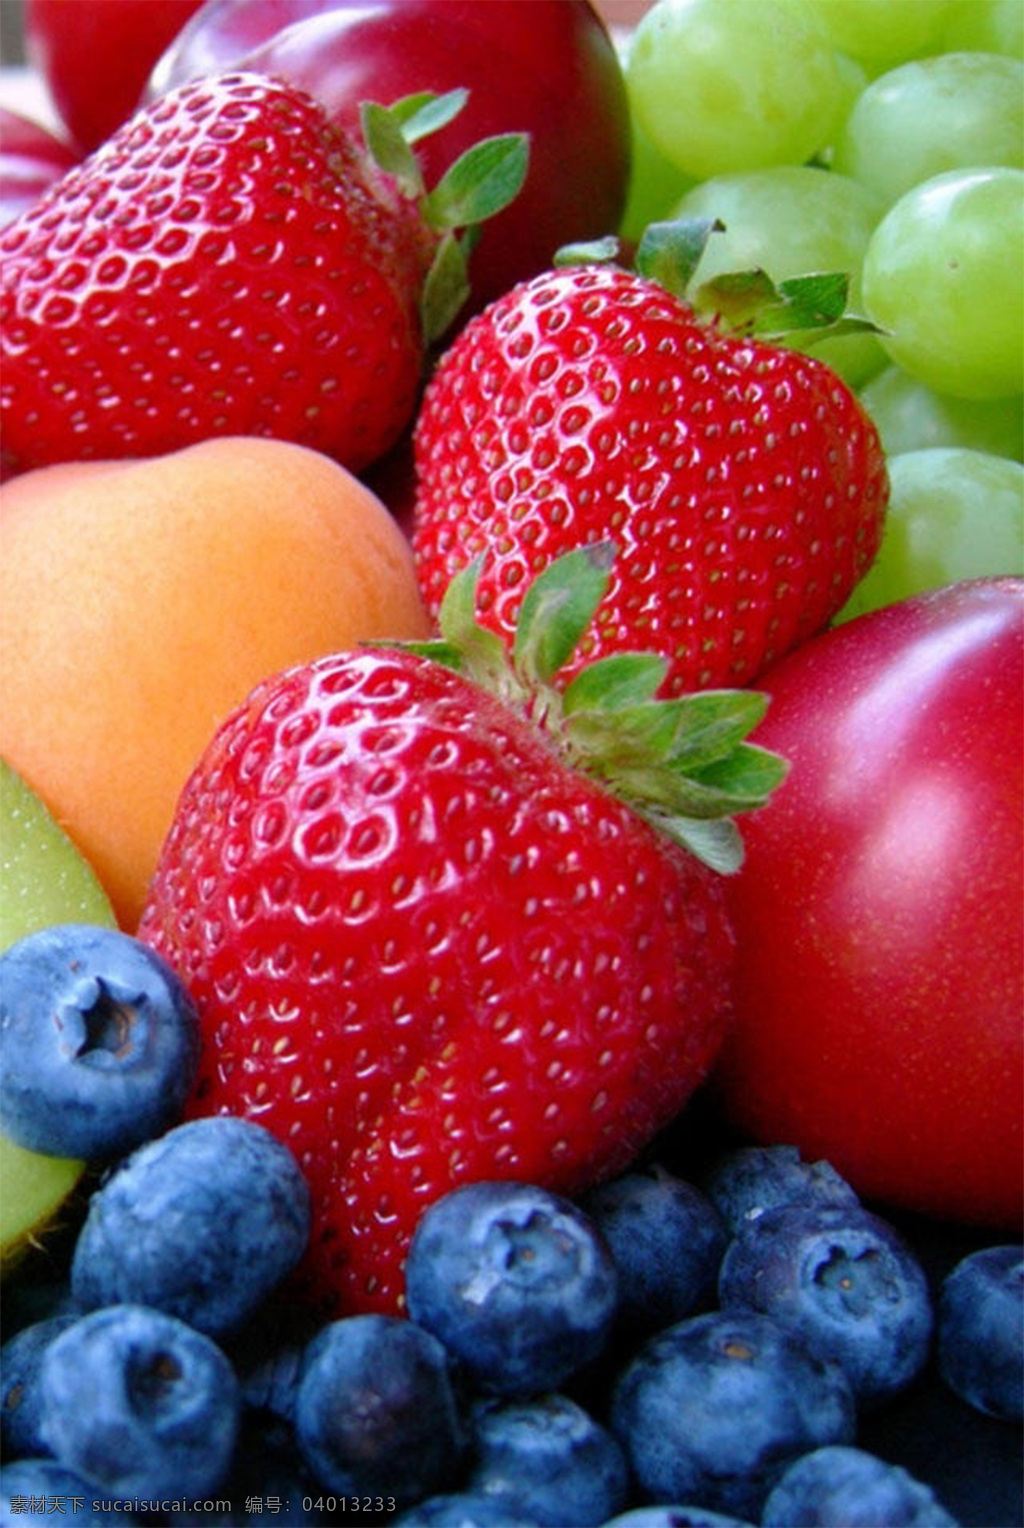 水果 果盘 草莓 樱桃 桑葚 哈密瓜 杏 树莓 猕猴桃 桃子 桃 木板 食物 果实 新鲜水果 果子